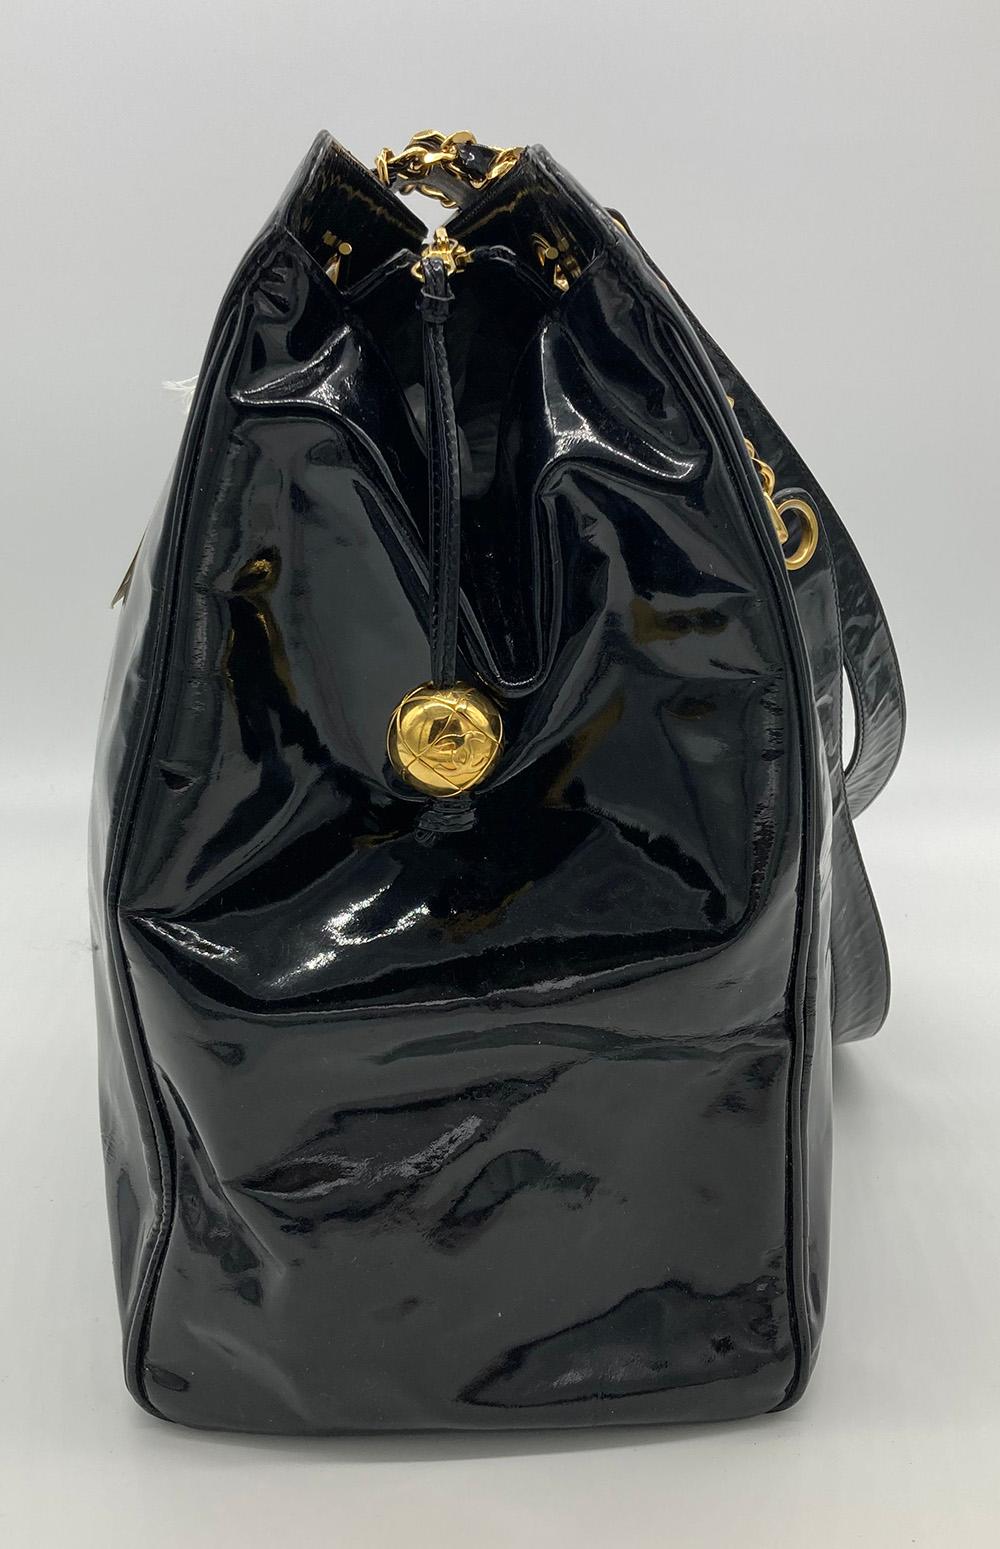 Vintage Chanel Black Patent XL Weekender Super Model Tote in gutem Zustand. Schwarzes Lackleder außen mit gewebtem Leder und Kettenlackleder-Schulterriemen und goldener Hardware im zeitlosen Vintage-Supermodell-Weekender-Stil. Gesticktes CC-Logo